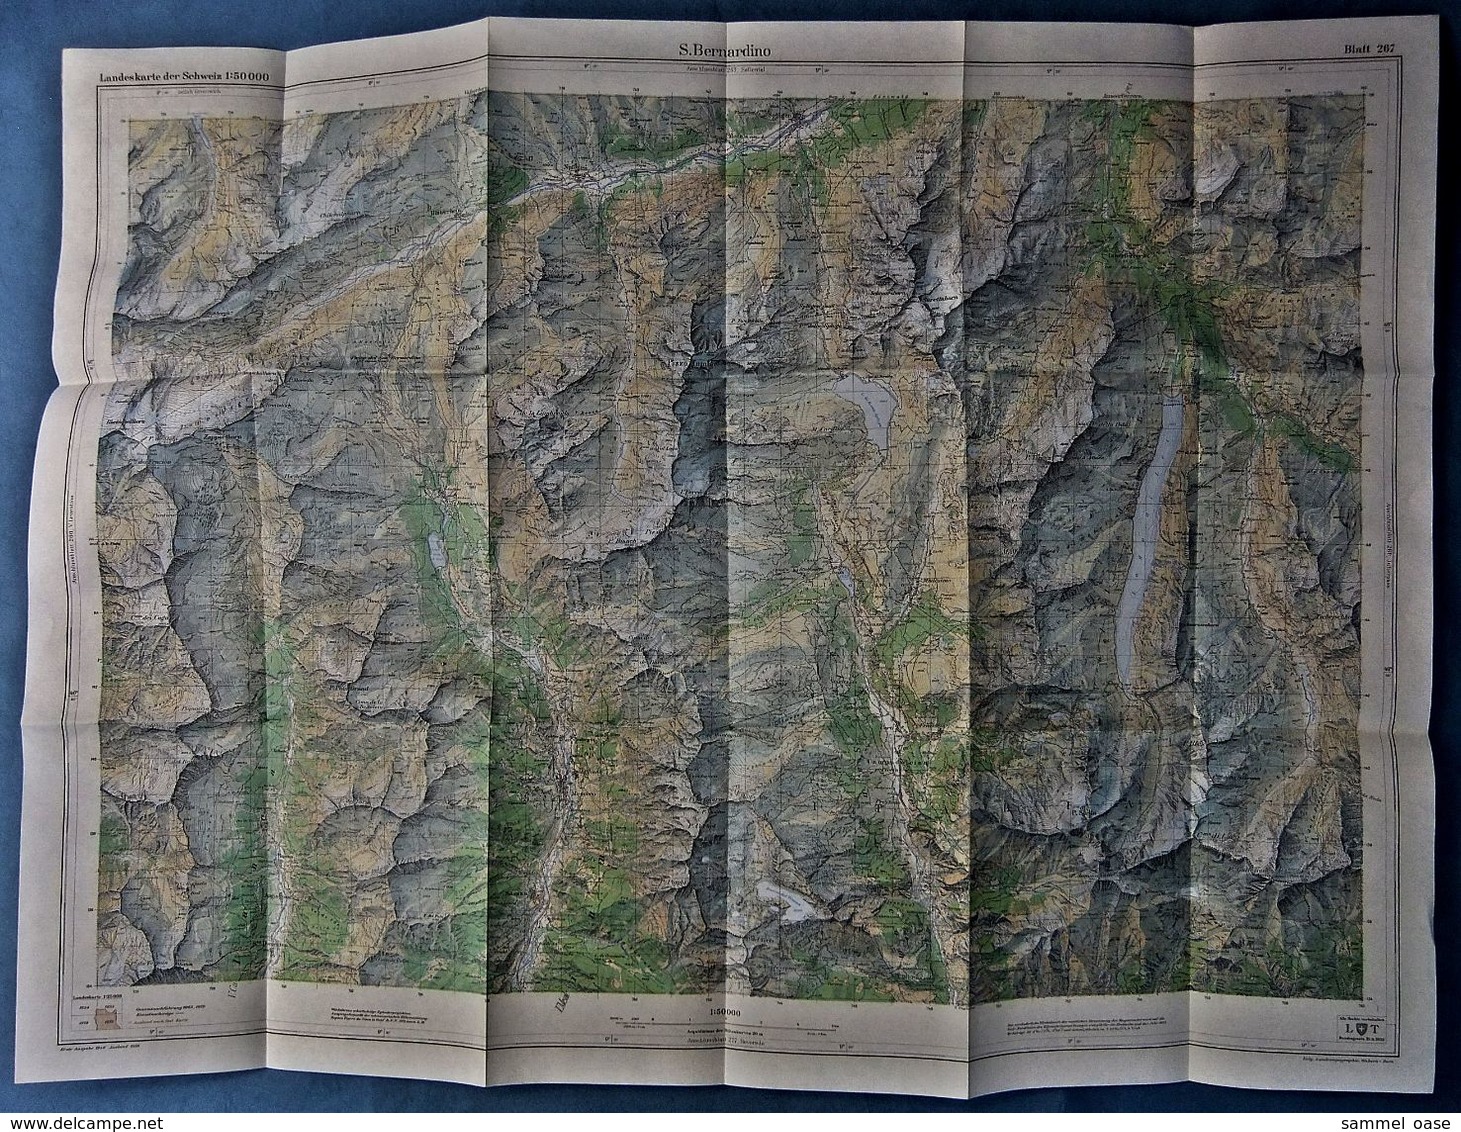 Topographische Karte / Landeskarte Schweiz  -  S. Bernardino 267  - 1:50 000  -  1970 - Maps Of The World